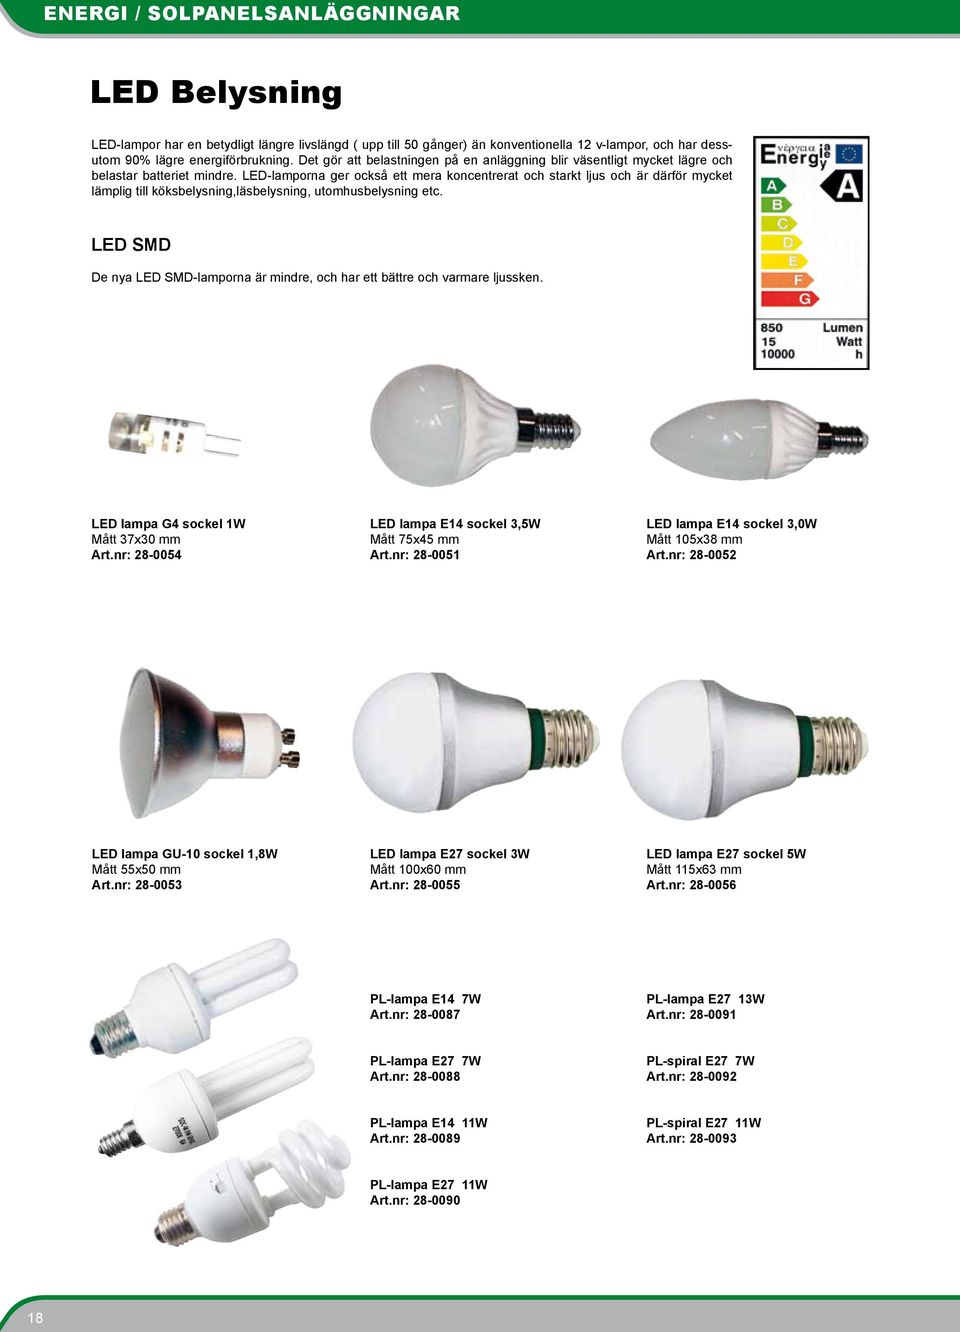 LED-lamporna ger också ett mera koncentrerat och starkt ljus och är därför mycket lämplig till köksbelysning,läsbelysning, utomhusbelysning etc.